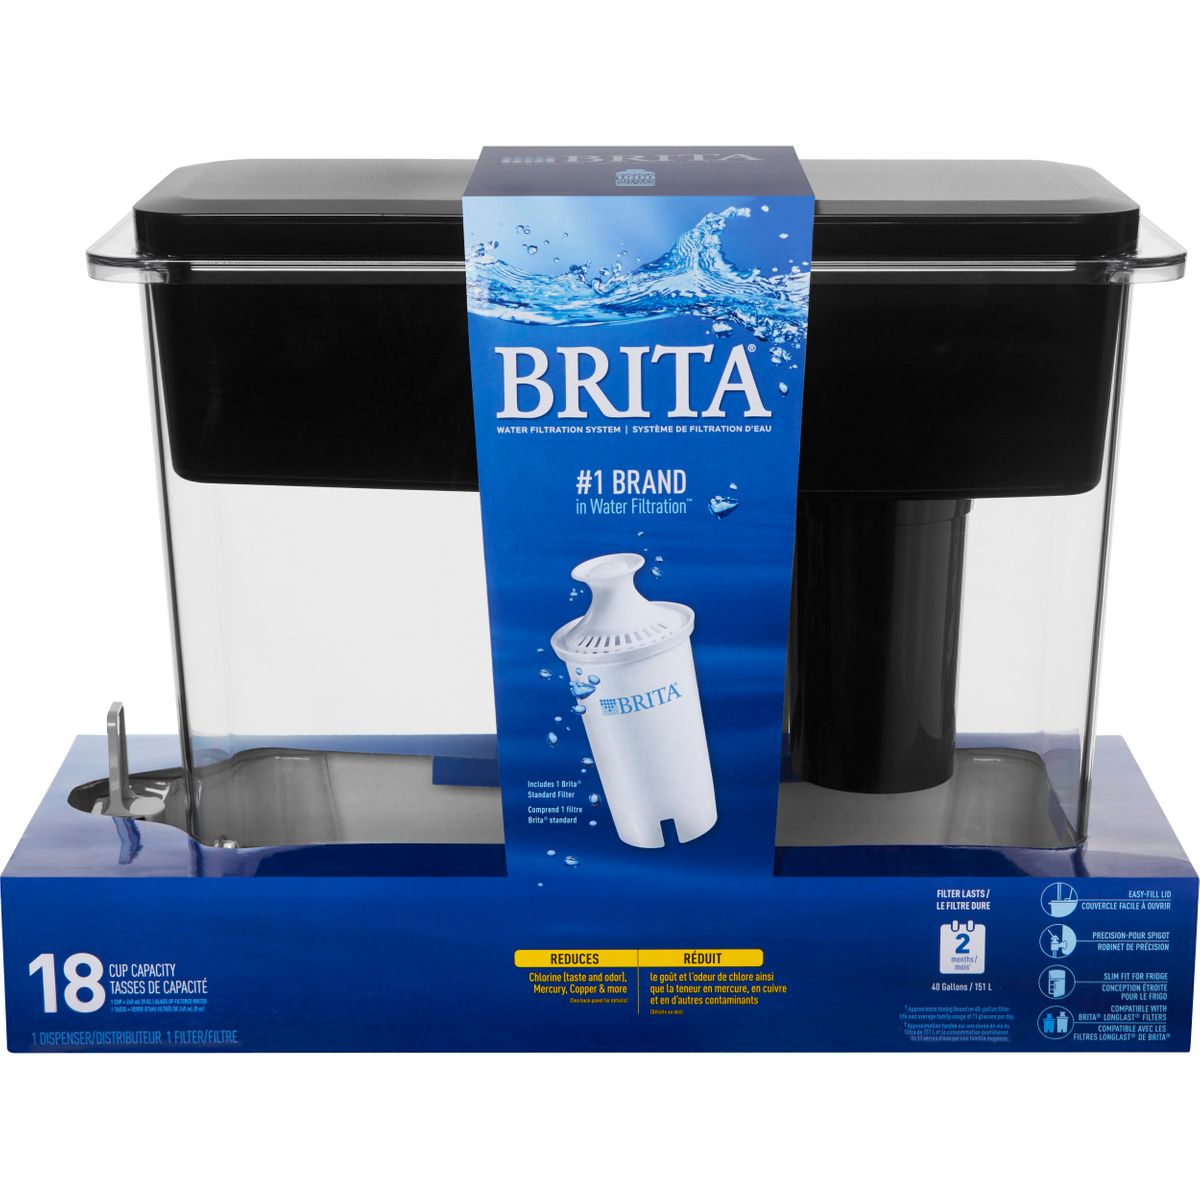 | BPAフリーのUltraMaxウォーターディスペンサーは、18カップの水を入れることができ、24オンスの再利用可能なウォーターボトル6本分の水を入れることができます。 Brita に切り替えることで、年間1,800本の使い捨てのプラスチック製ウォーターボトル*を交換することができ、節約にもなります。高さ10.47インチ、幅5.67インチ、長さ/奥行き14.37インチ、重さ3ポンド Brita は、塩素（味と臭い）、水銀、銅、亜鉛、カドミウムを削減するNo.1の浄水器**です。いつもよりきれいな***、ろ過された水を得ることができます。 | ※商品の仕様やパッケージは予告なく変更になる場合がございます。 ※化粧箱に破損があっても内容品に問題が無い場合は返品・交換を承ることはできません。 【重要】注意事項（ご購入前に必ずお読みください。） ・当店でご購入された商品は、原則として、「個人輸入」としての取り扱いになり、全てアメリカのカリフォルニア州からお客様のもとへ 直送されます。 ・個人輸入される商品は、全てご注文者自身の「個人使用・個人消費」が前提となりますので、ご注文された商品を第三者へ譲渡・転売することは法律で禁止されております。 ・通関時に関税・輸入消費税が発生した場合は当店が負担いたします。お客様にお支払いいただく関税・輸入消費税はございません。 ・前払いの場合はご入金日から、それ以外の場合はご注文日から7日以内に国際発送、17日以内にお届け予定です。商品の在庫状況やアメリカ国内での配送状況、通関の状況等によって、商品のお届けまでに17日以上かかる場合がございます。 ・住所不明・長期不在・受取拒否などお客様のご都合で商品を受け取りされず、配送会社のセンターへ商品が返送された場合、当店が定める期日までにお客様から配送会社へ再配達のご連絡をして頂けない場合はご注文をキャンセルさせて頂きます。その場合でもアメリカからの商品の発送費用や返送費用などは請求させて頂きます。 ＊色がある商品の場合、モニターの発色の具合によって実際のものと色が異なって見える場合がございます | The BPA-free UltraMax water dispenser holds 18 cups of water, enough to fill six 24-ounce reusable water bottles Get great tasting water without the waste; by switching to Brita, you can save money and replace 1,800 single-use plastic water bottles* a year This space efficient filtered water dispenser fits perfectly on refrigerator shelves, features an easy locking lid and precision pour spigot; Height 10.47"; Width 5.67"; Length/Depth 14.37"; Weight 3 pounds Brita is the #1 water filter** reducing chlorine (taste &amp; odor), Mercury, Copper, Zinc and Cadmium; always get cleaner***, filtered water with a helpful sticker indicator that makes filter reminders effortless Compatible with Longlast and Standard water filters; replace your Longlast filter after 120 gallons or approx. every 6 mos. or Standard filter after 40 gallons or approx. every 2 mos; *16.9 oz water bottle; **Based on IRI data; ***vs tap